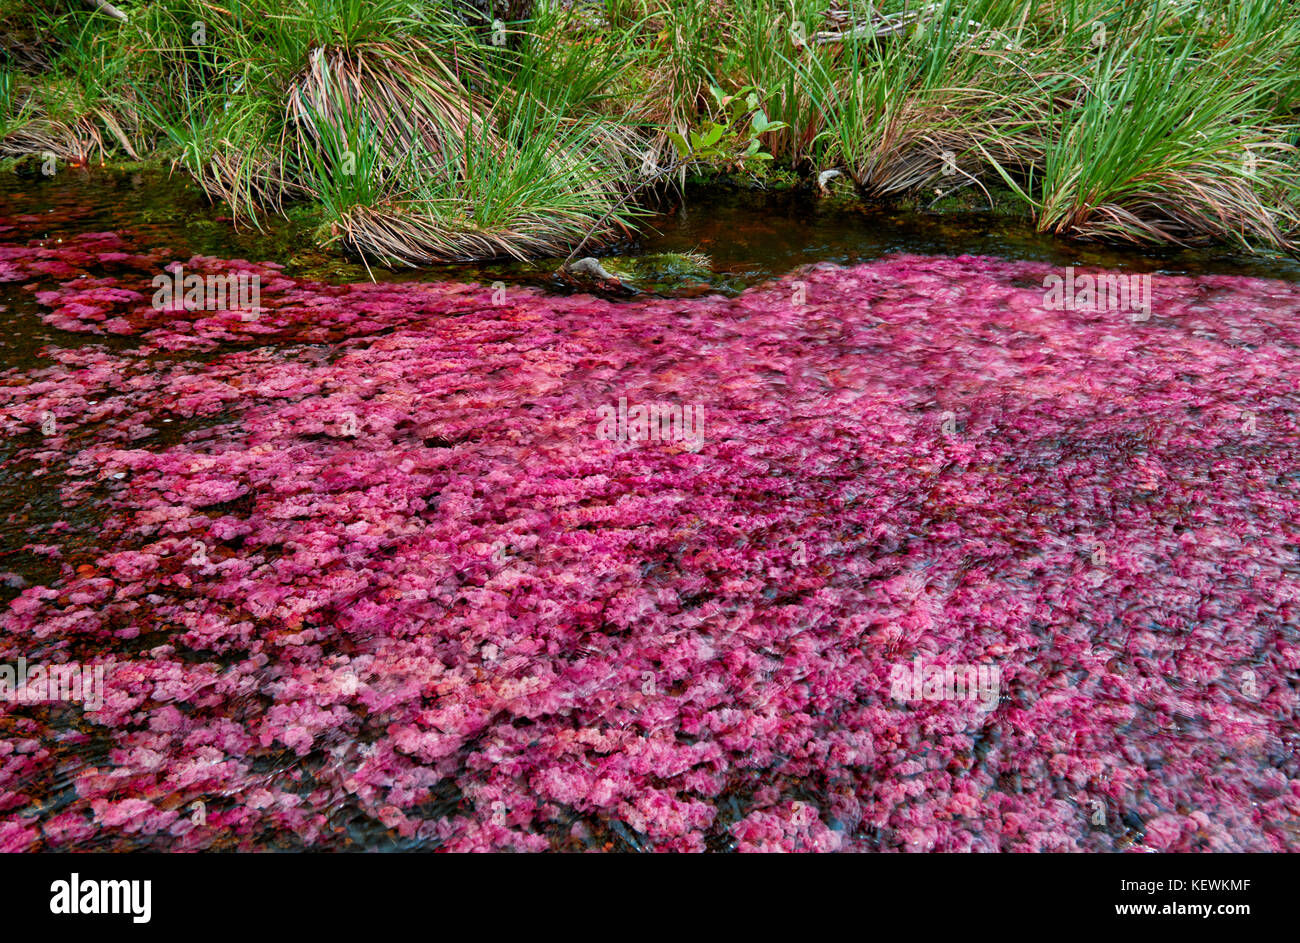 red algae 'Macarenia clavigera' in river near Cano Cristales called the 'River of Five Colors' or the 'Liquid Rainbow', Serrania de la Macarena Stock Photo